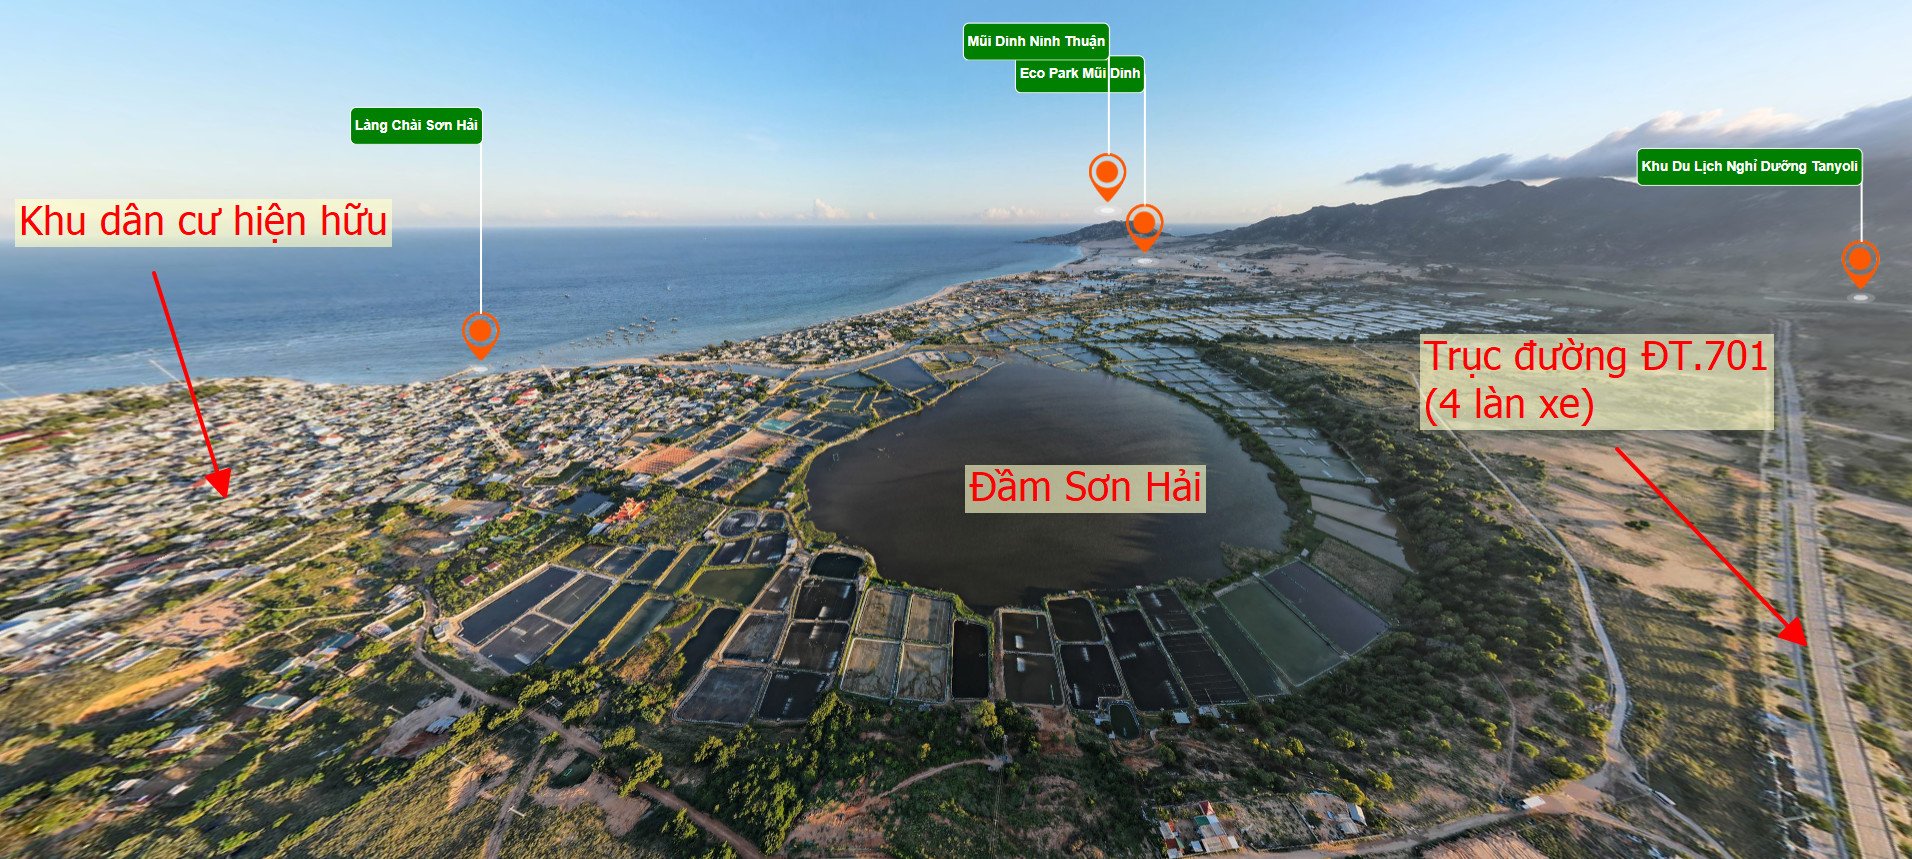 Đất nền quy hoạch đất ở - ONT - full thổ cư, view biển, view đầm Sơn Hải, gần Eco Park Mũi Dinh, giá từ 2,6 triệu/m2 8